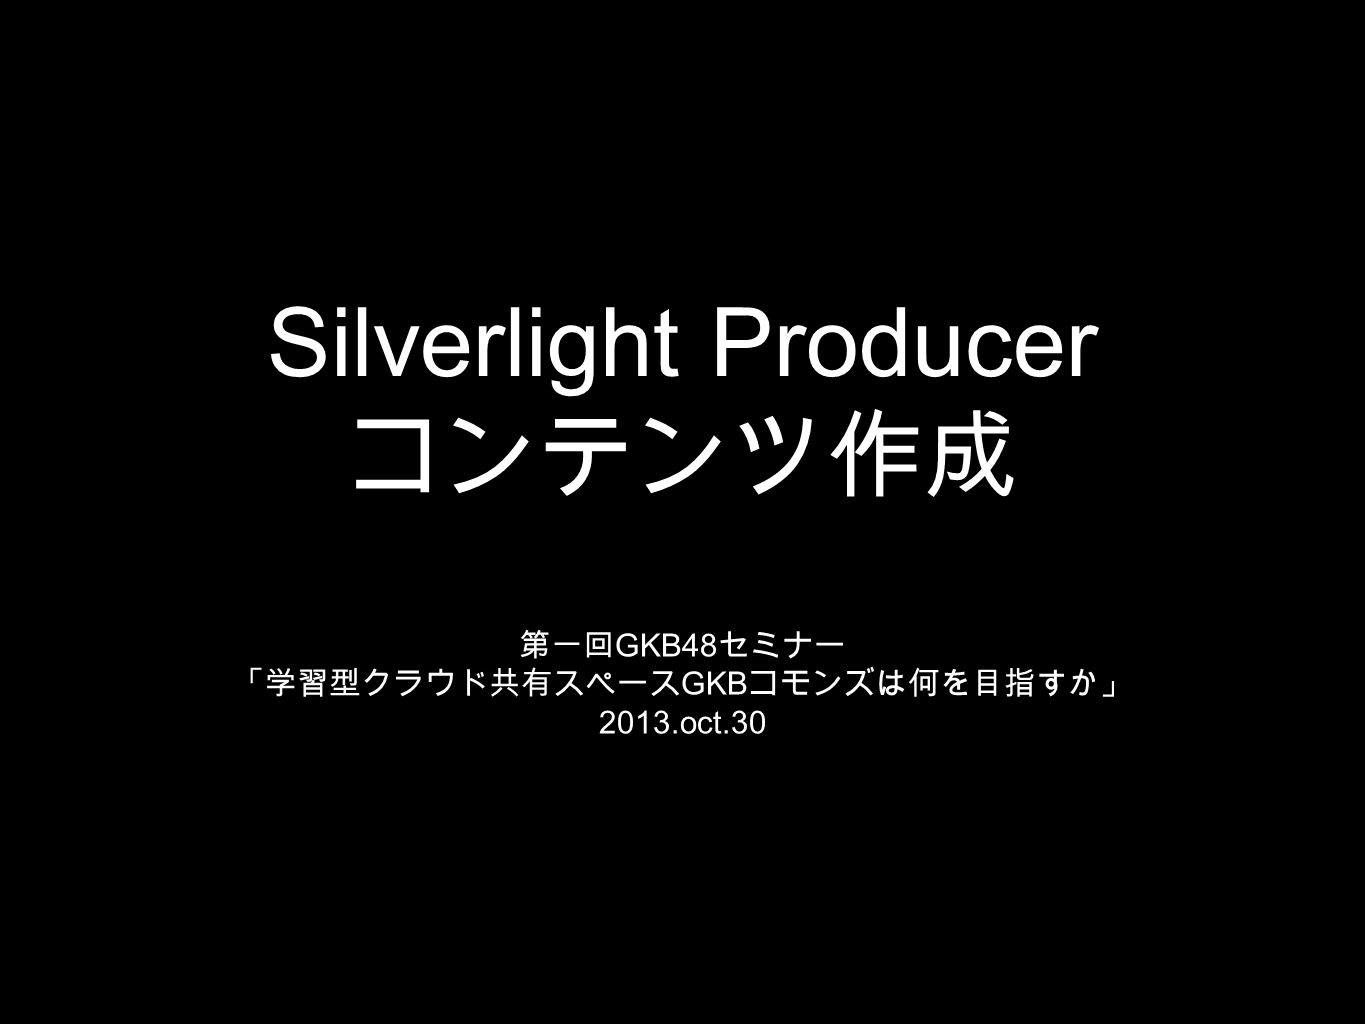 Silverlight Producer コンテンツ作成 第一回 GKB48 セミナー 「学習型クラウド共有スペース GKB コモンズは何を目指すか」 2013.oct.30